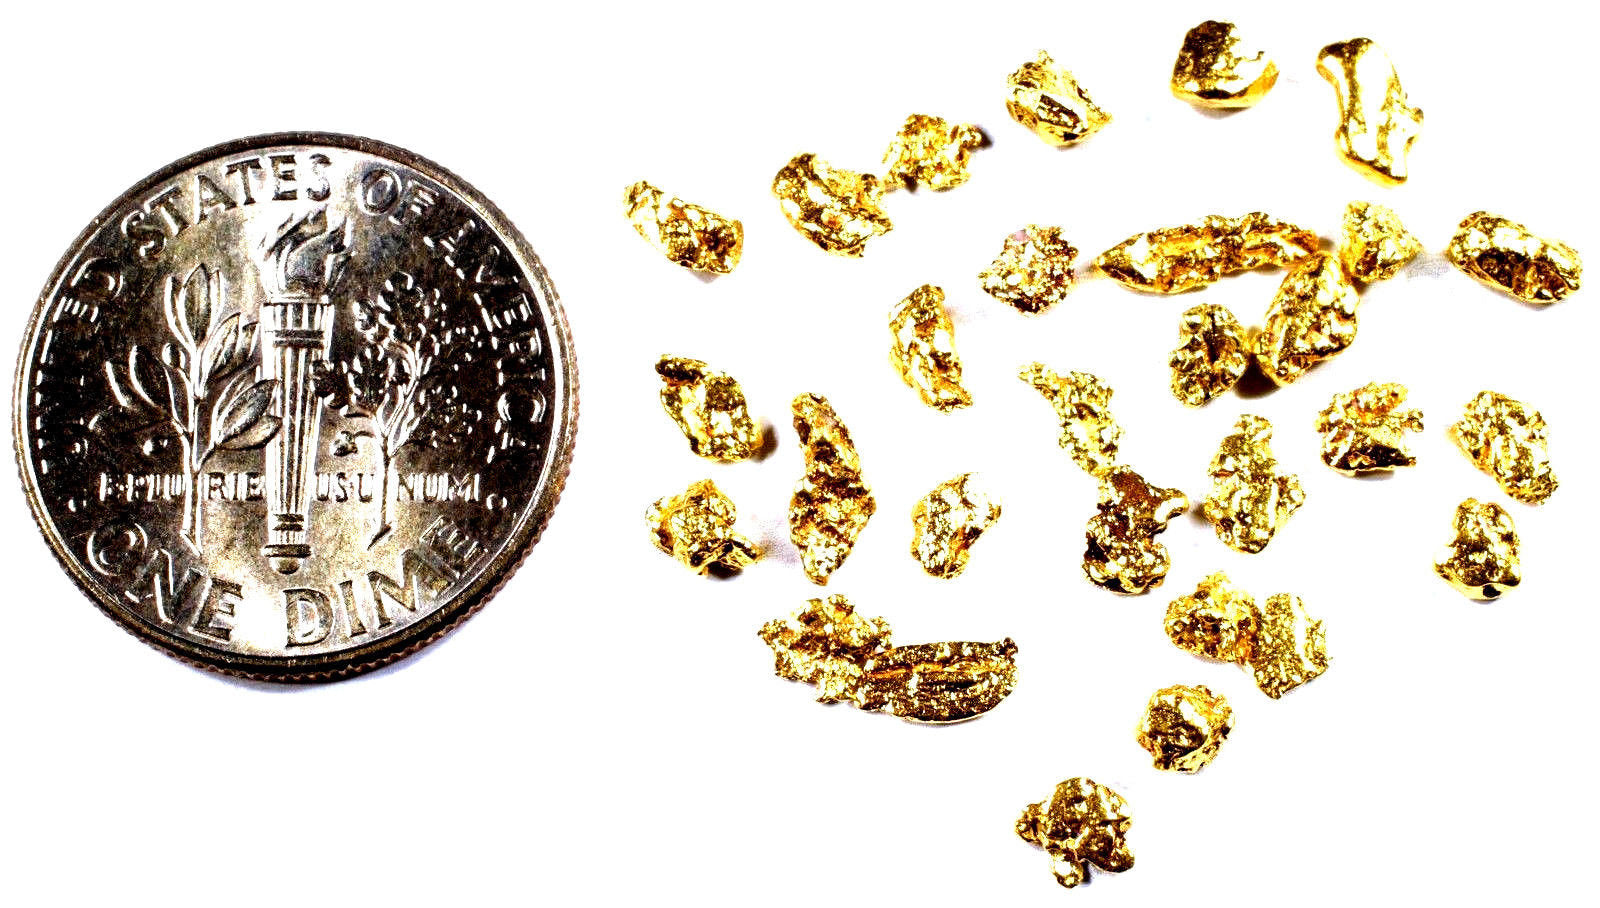 0.220+ GRAMS ALASKAN YUKON BC NATURAL PURE GOLD NUGGET HAND PICKED - Liquidbullion